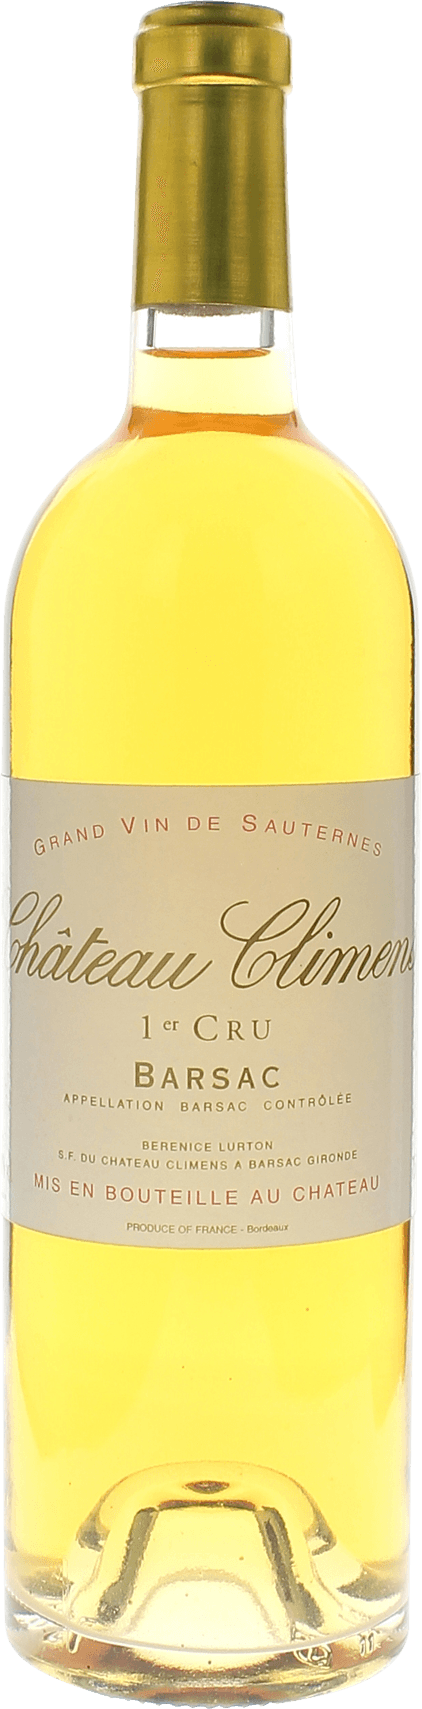 Climens 1995 1er cru Sauternes Barsac, Bordeaux blanc